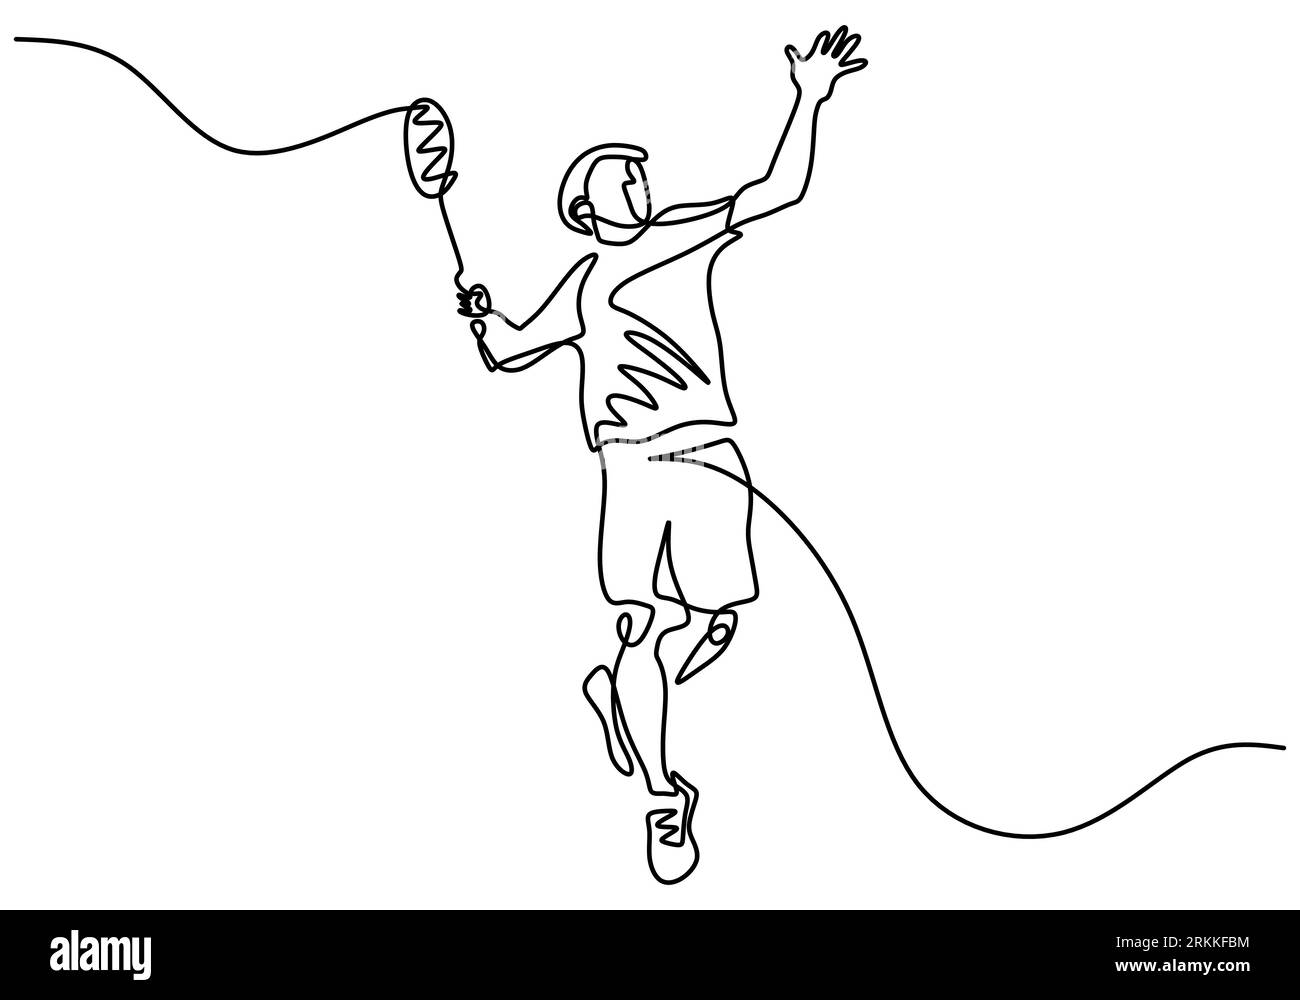 Una línea continua de dibujo de joven jugador de tenis feliz haciendo servicio y golpeó la pelota. Concepto de ejercicio deportivo dibujado a mano diseño de minimalismo. Vector Ilustración del Vector